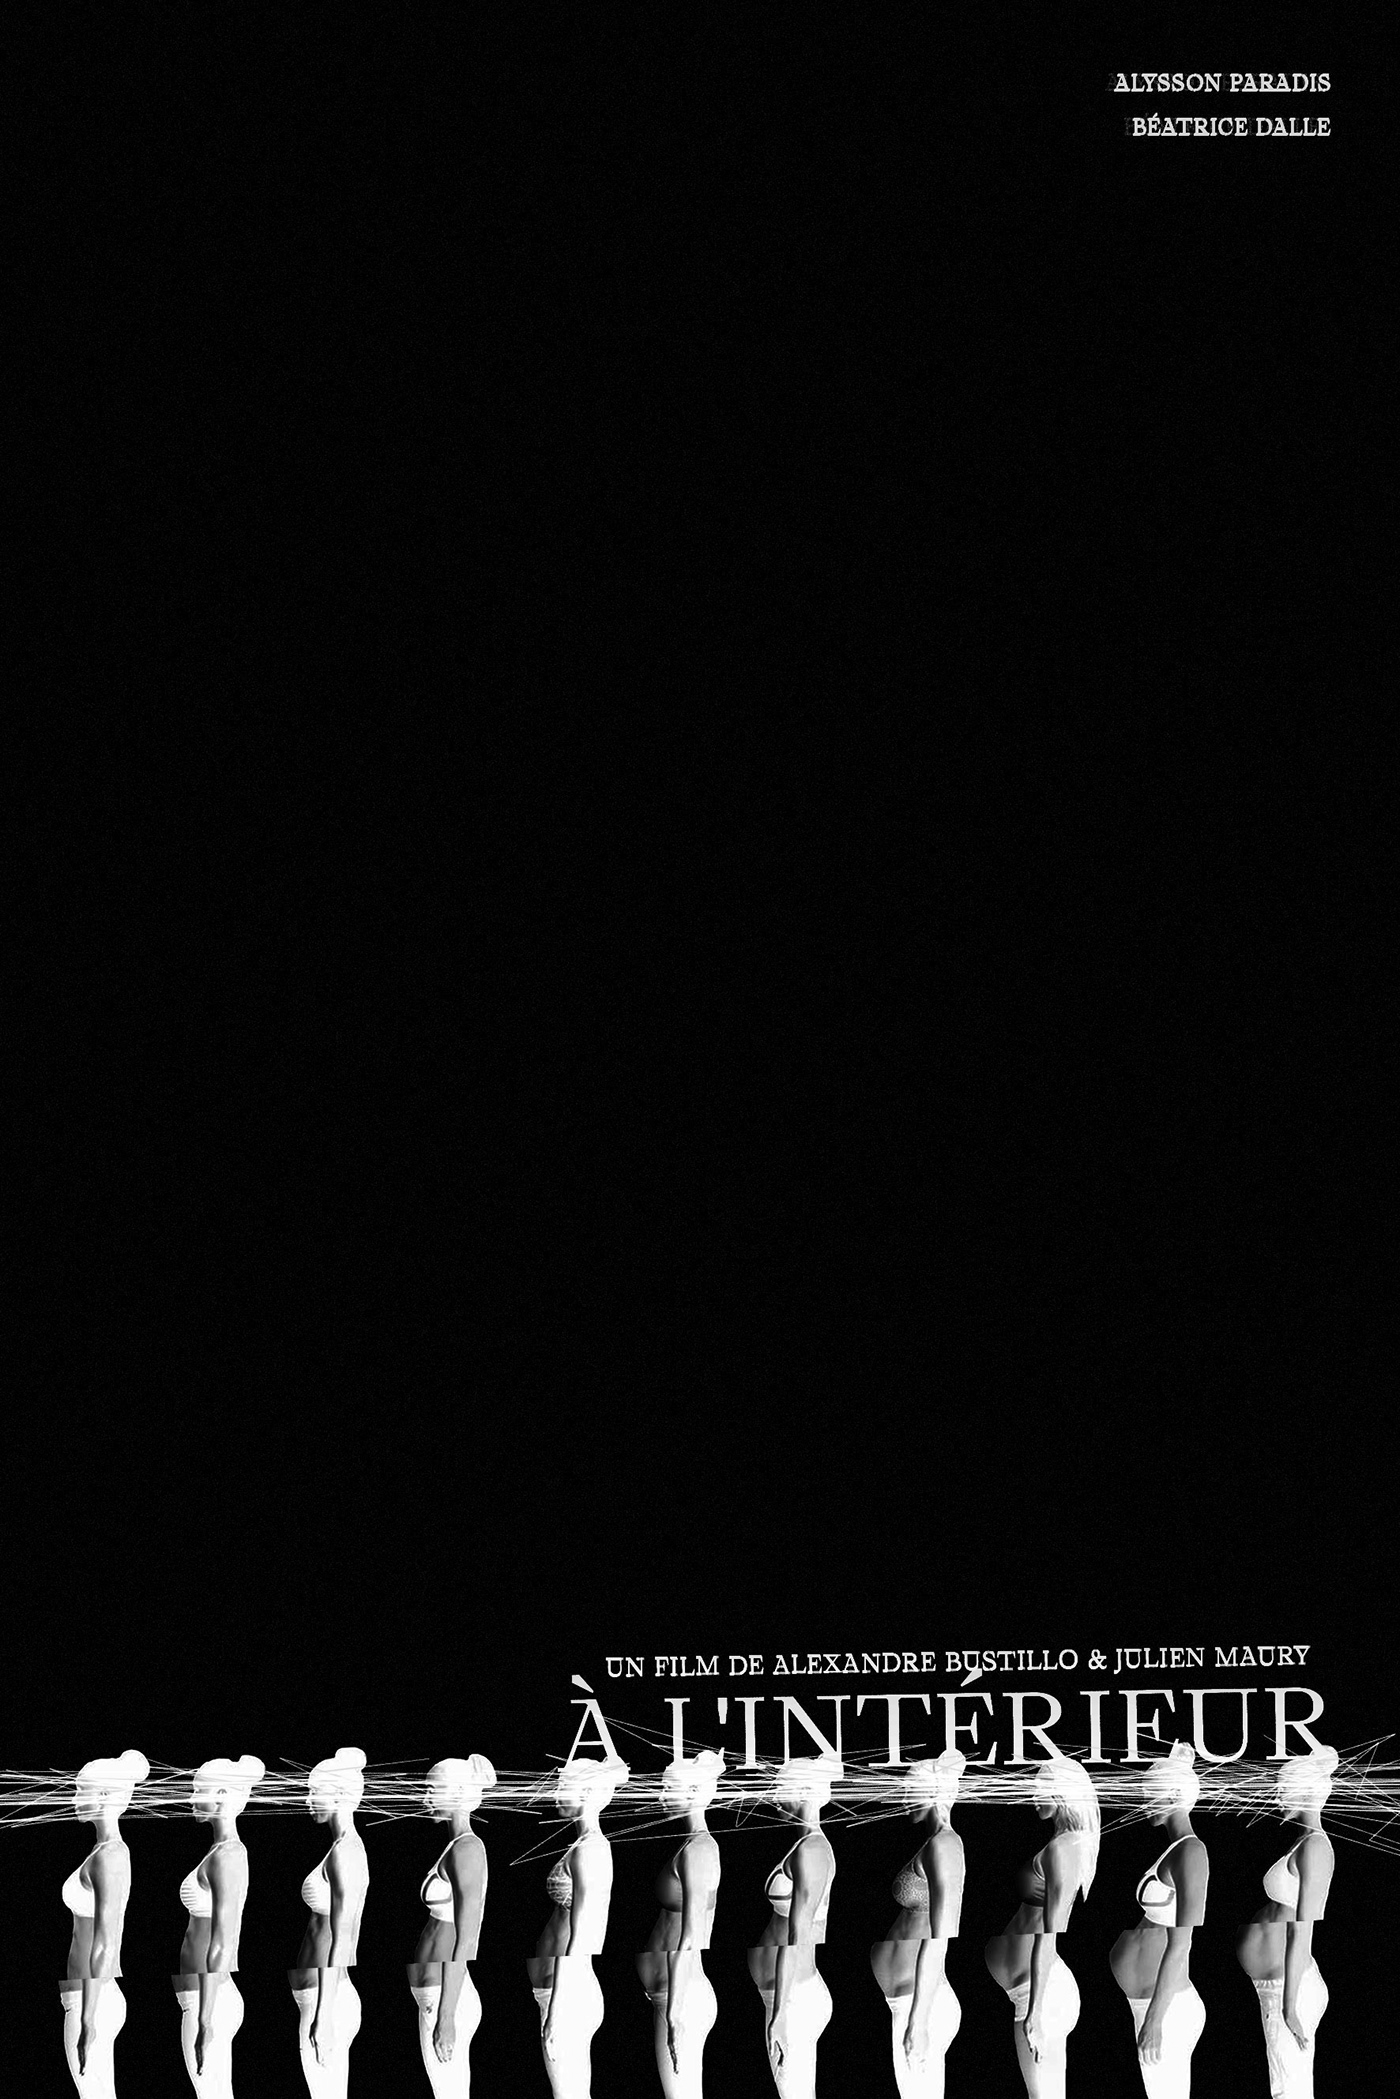 Alexandre Bustillo & Julien Maury 'À l'intérieur'